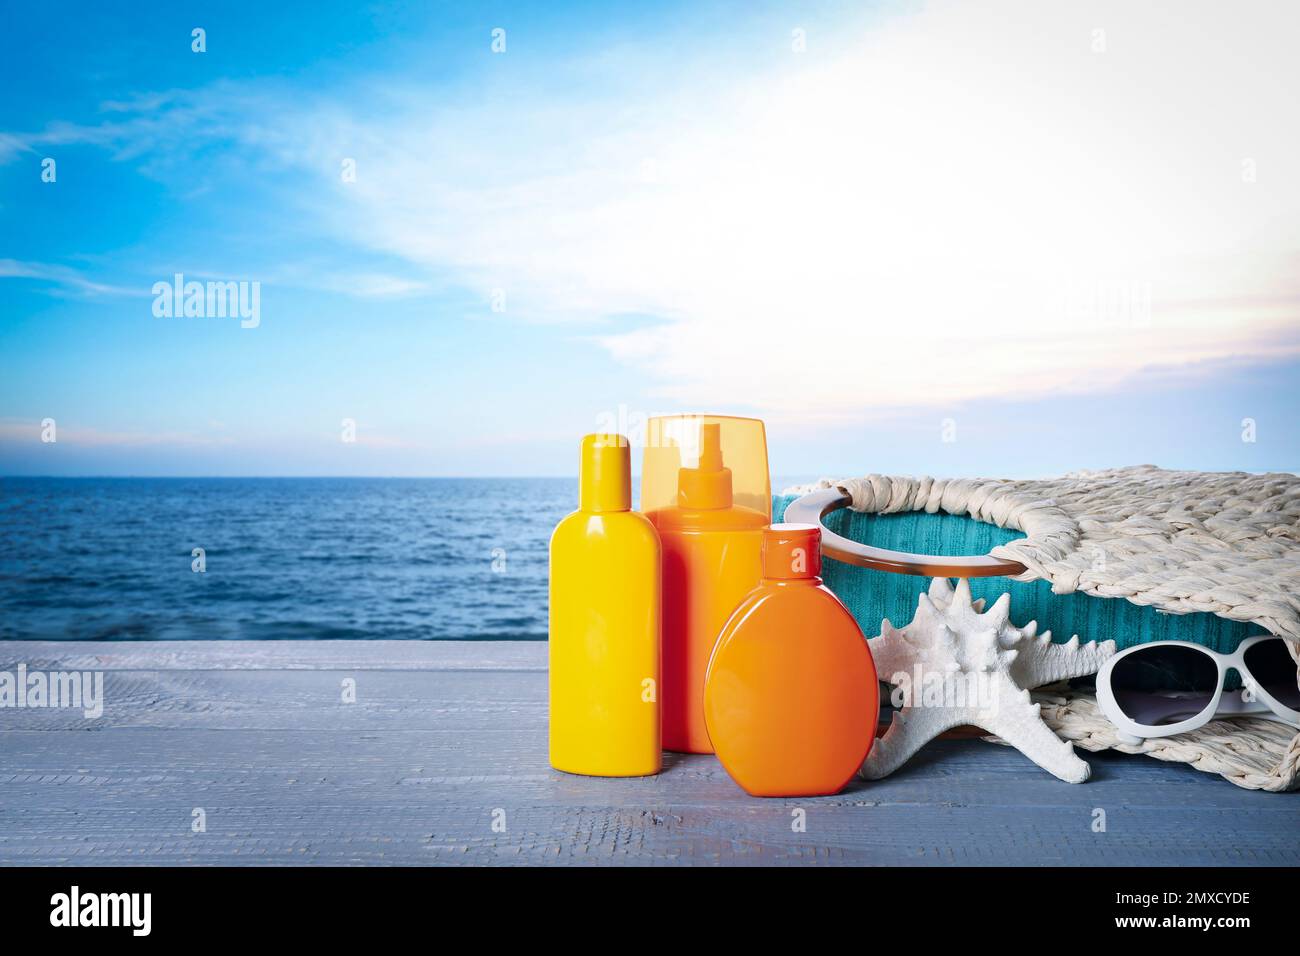 Set di prodotti per la protezione solare e accessori eleganti su tavola in legno vicino al mare. Spazio per il testo Foto Stock